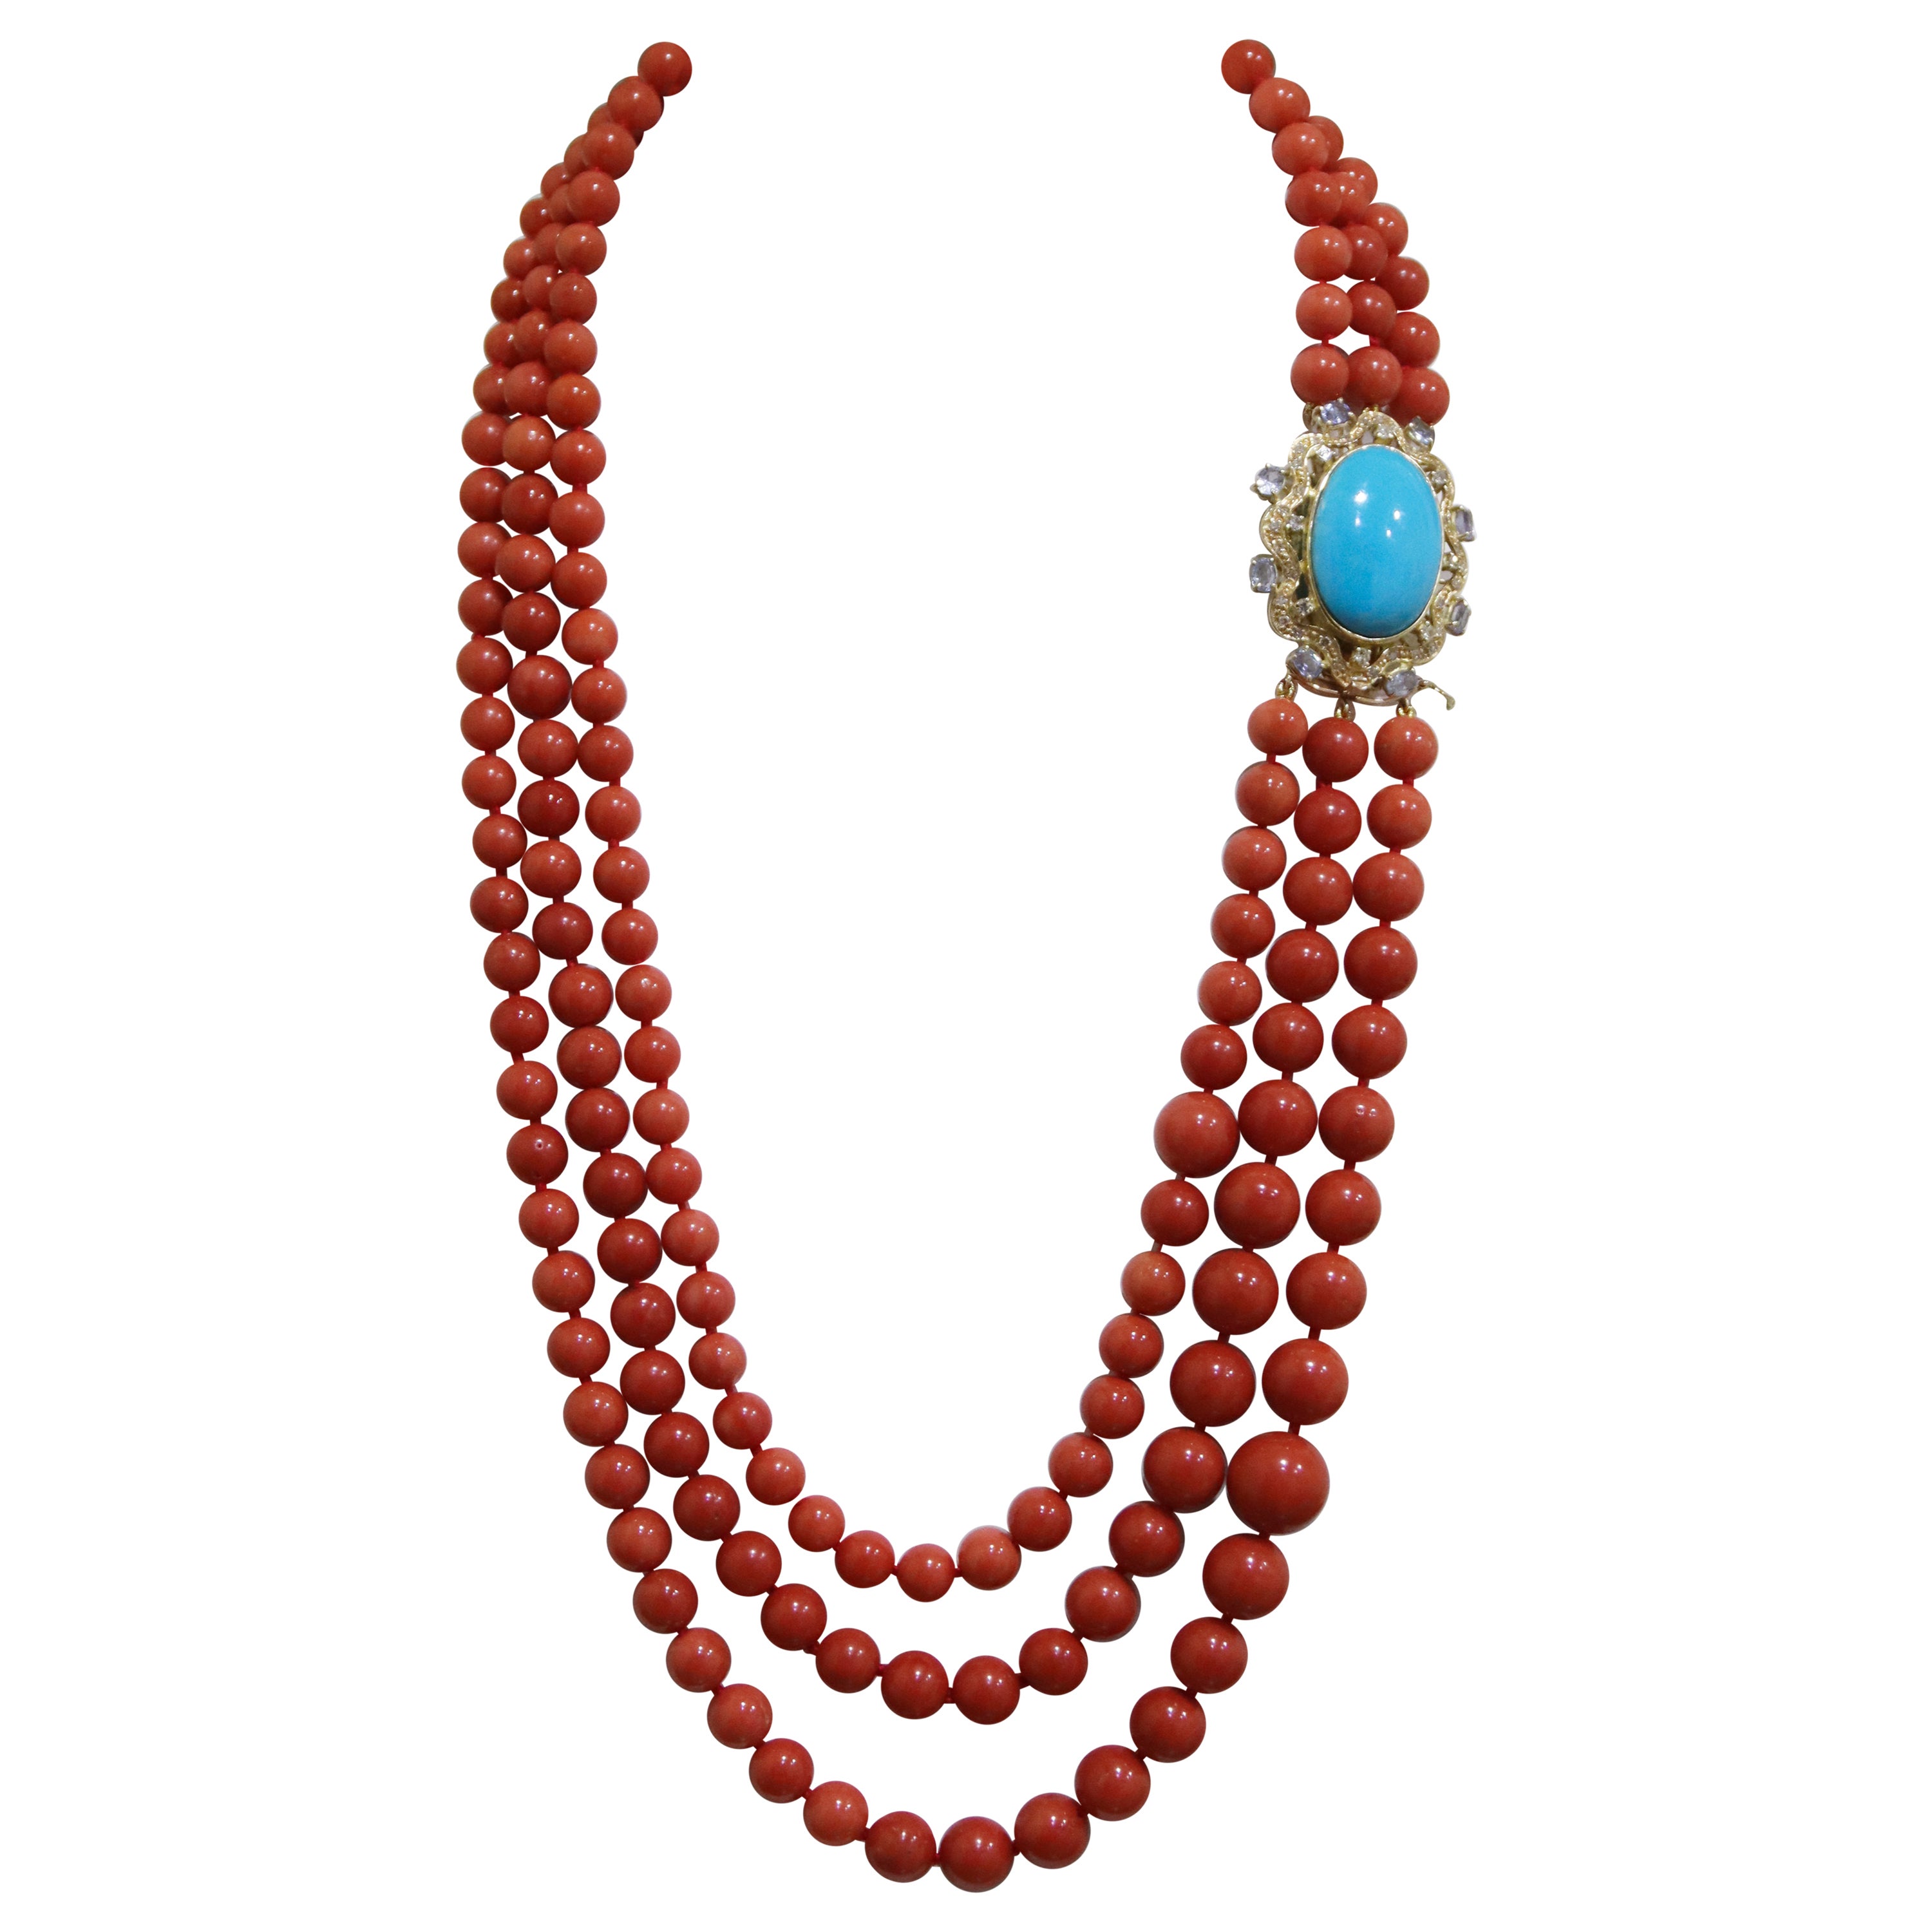 Collier de perles en or jaune 18 carats avec corail, diamants, saphirs et turquoises